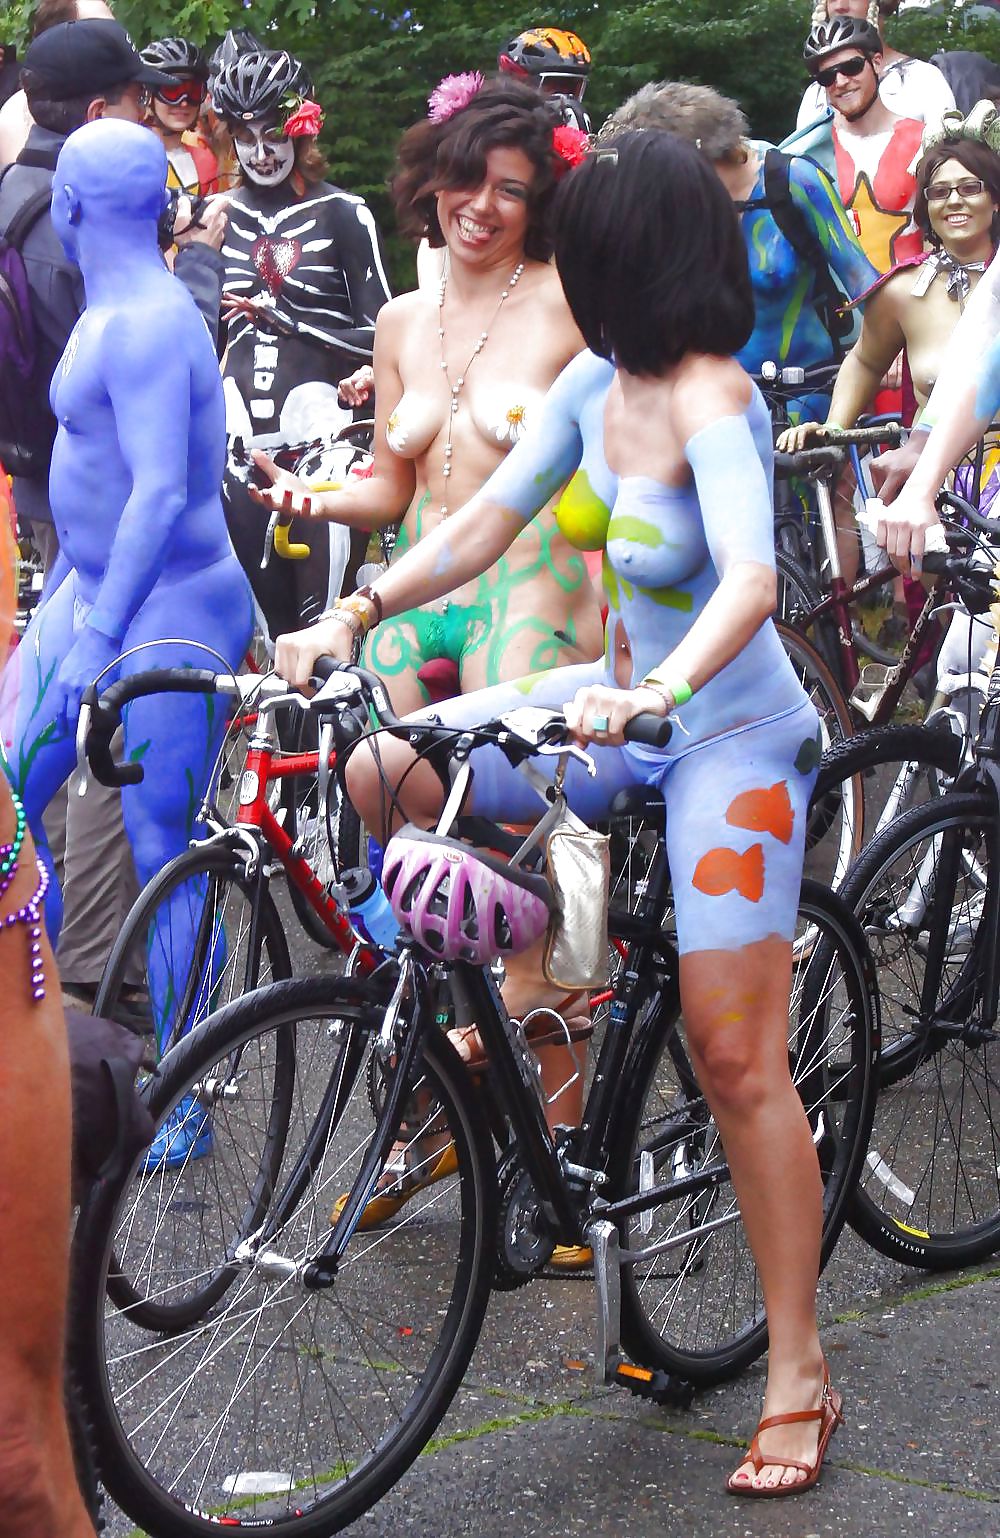 Sport Nackt Fahrrad #rec Muschi Auf Dem Fahrrad Von Den Benutzern Gall4 #5522774